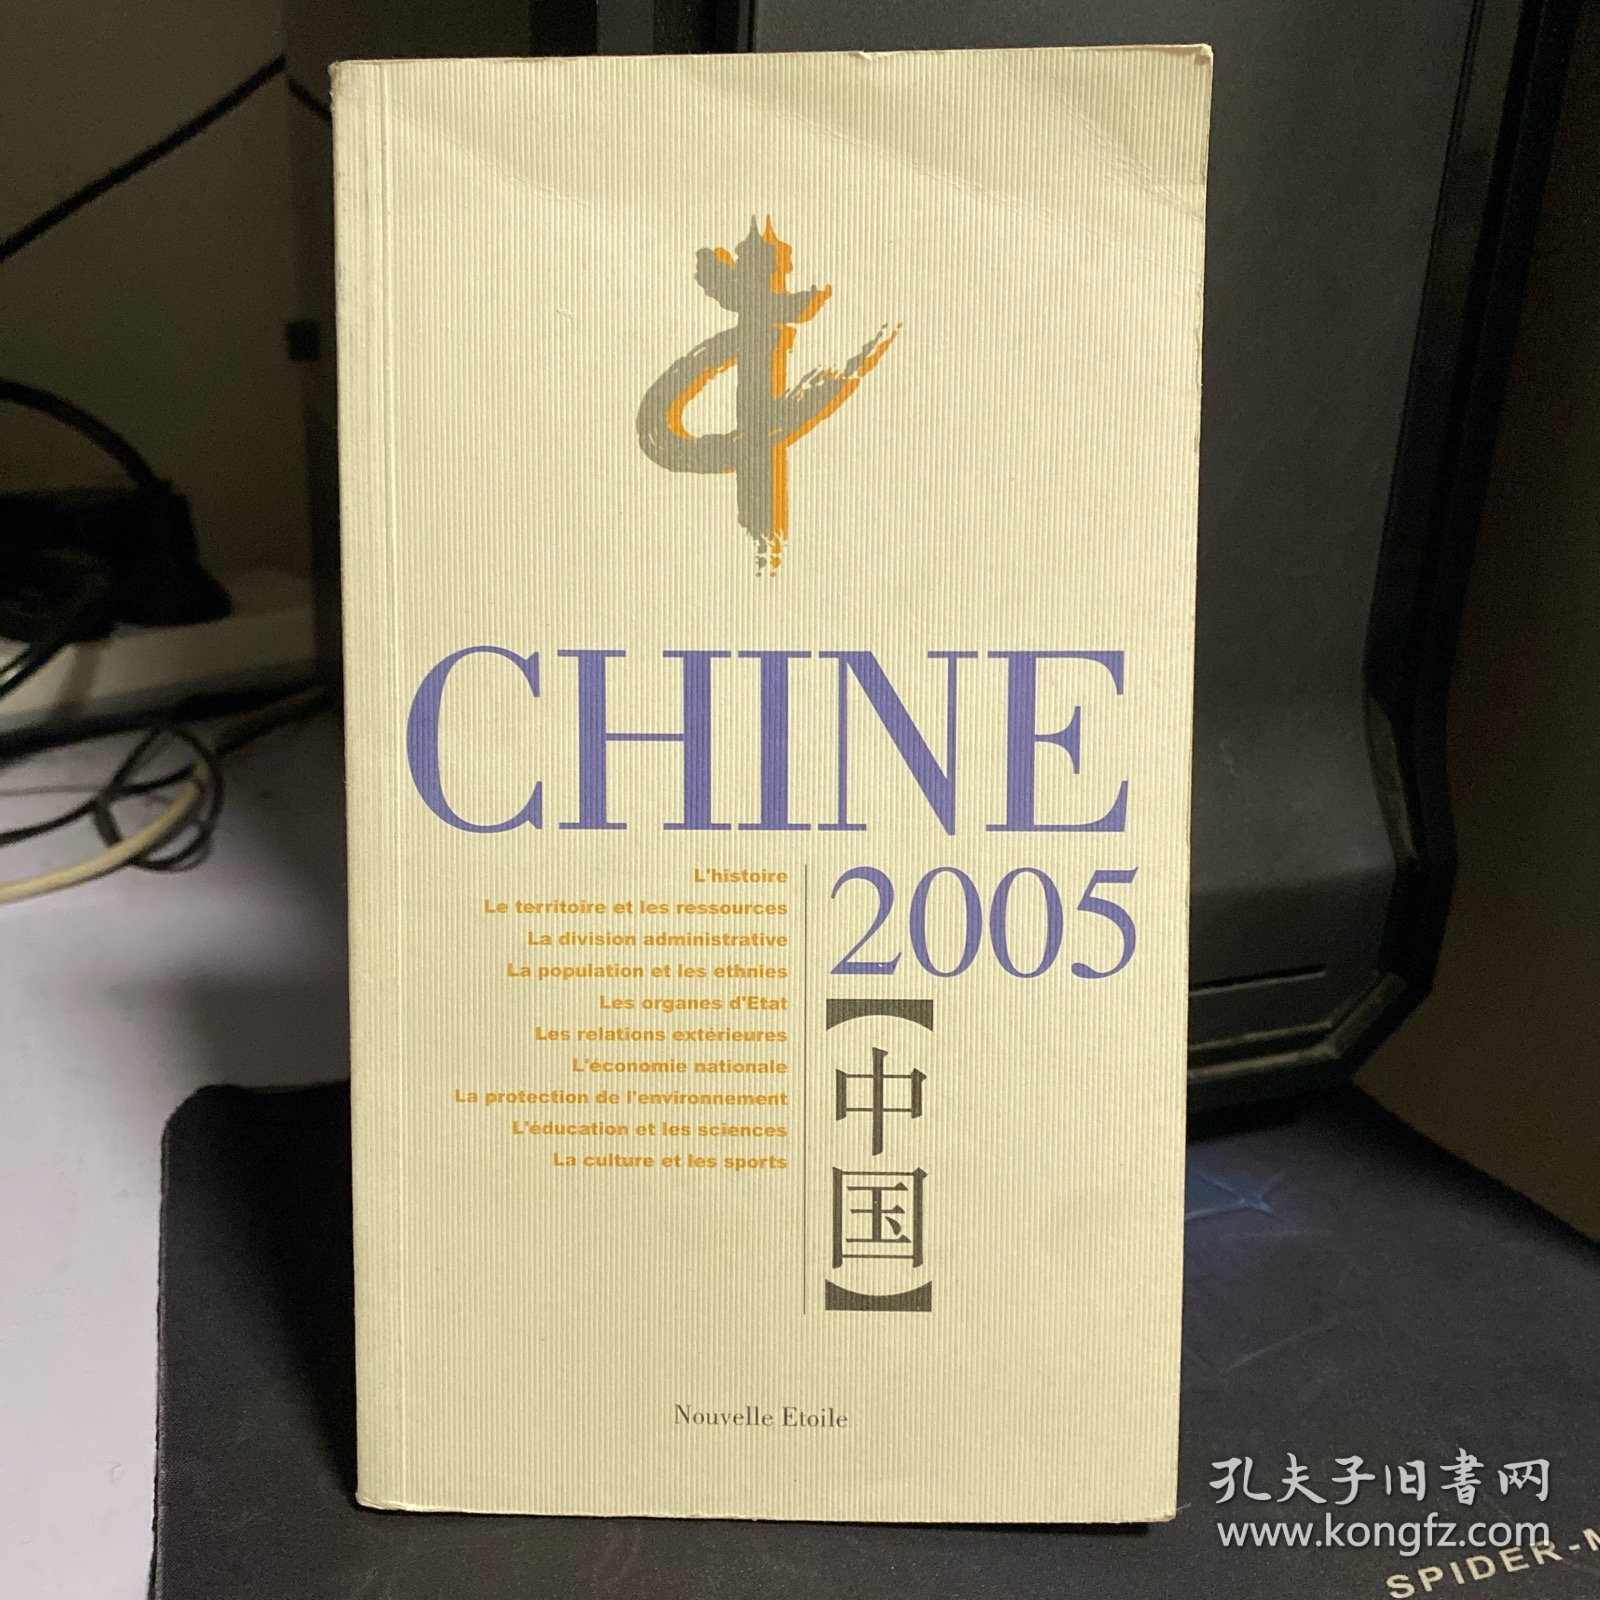 中国2005